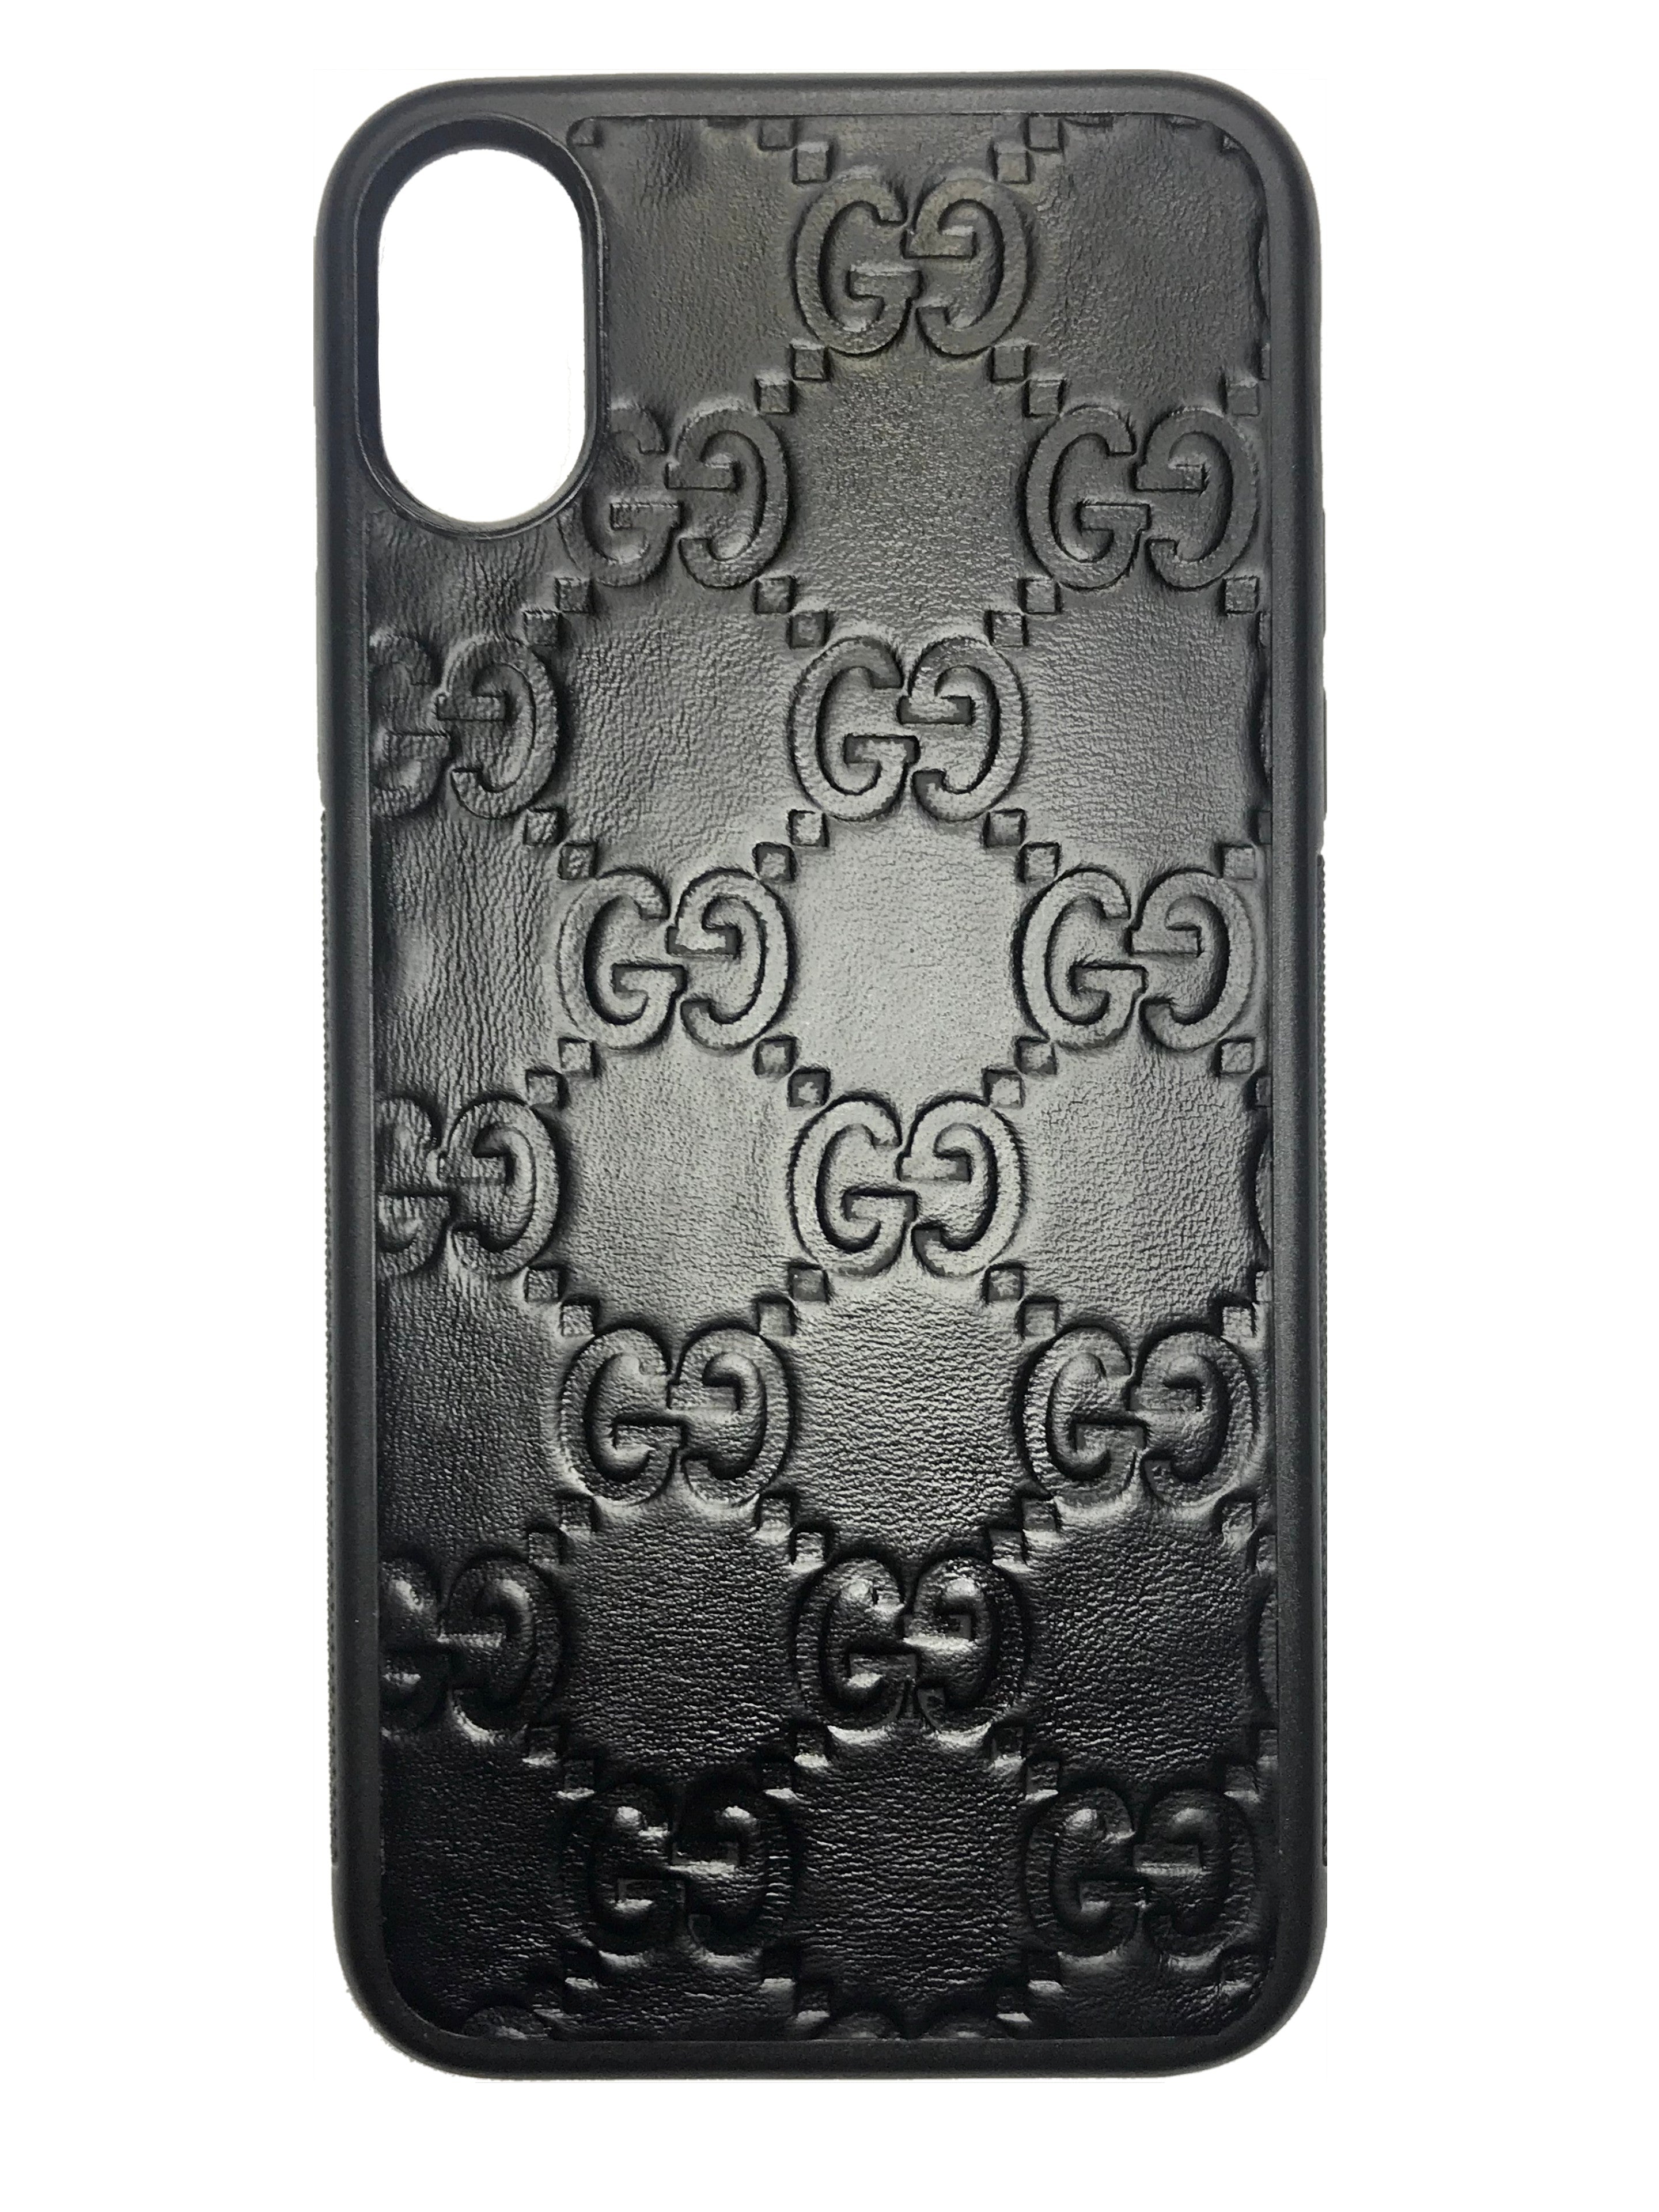 black gucci iphone case